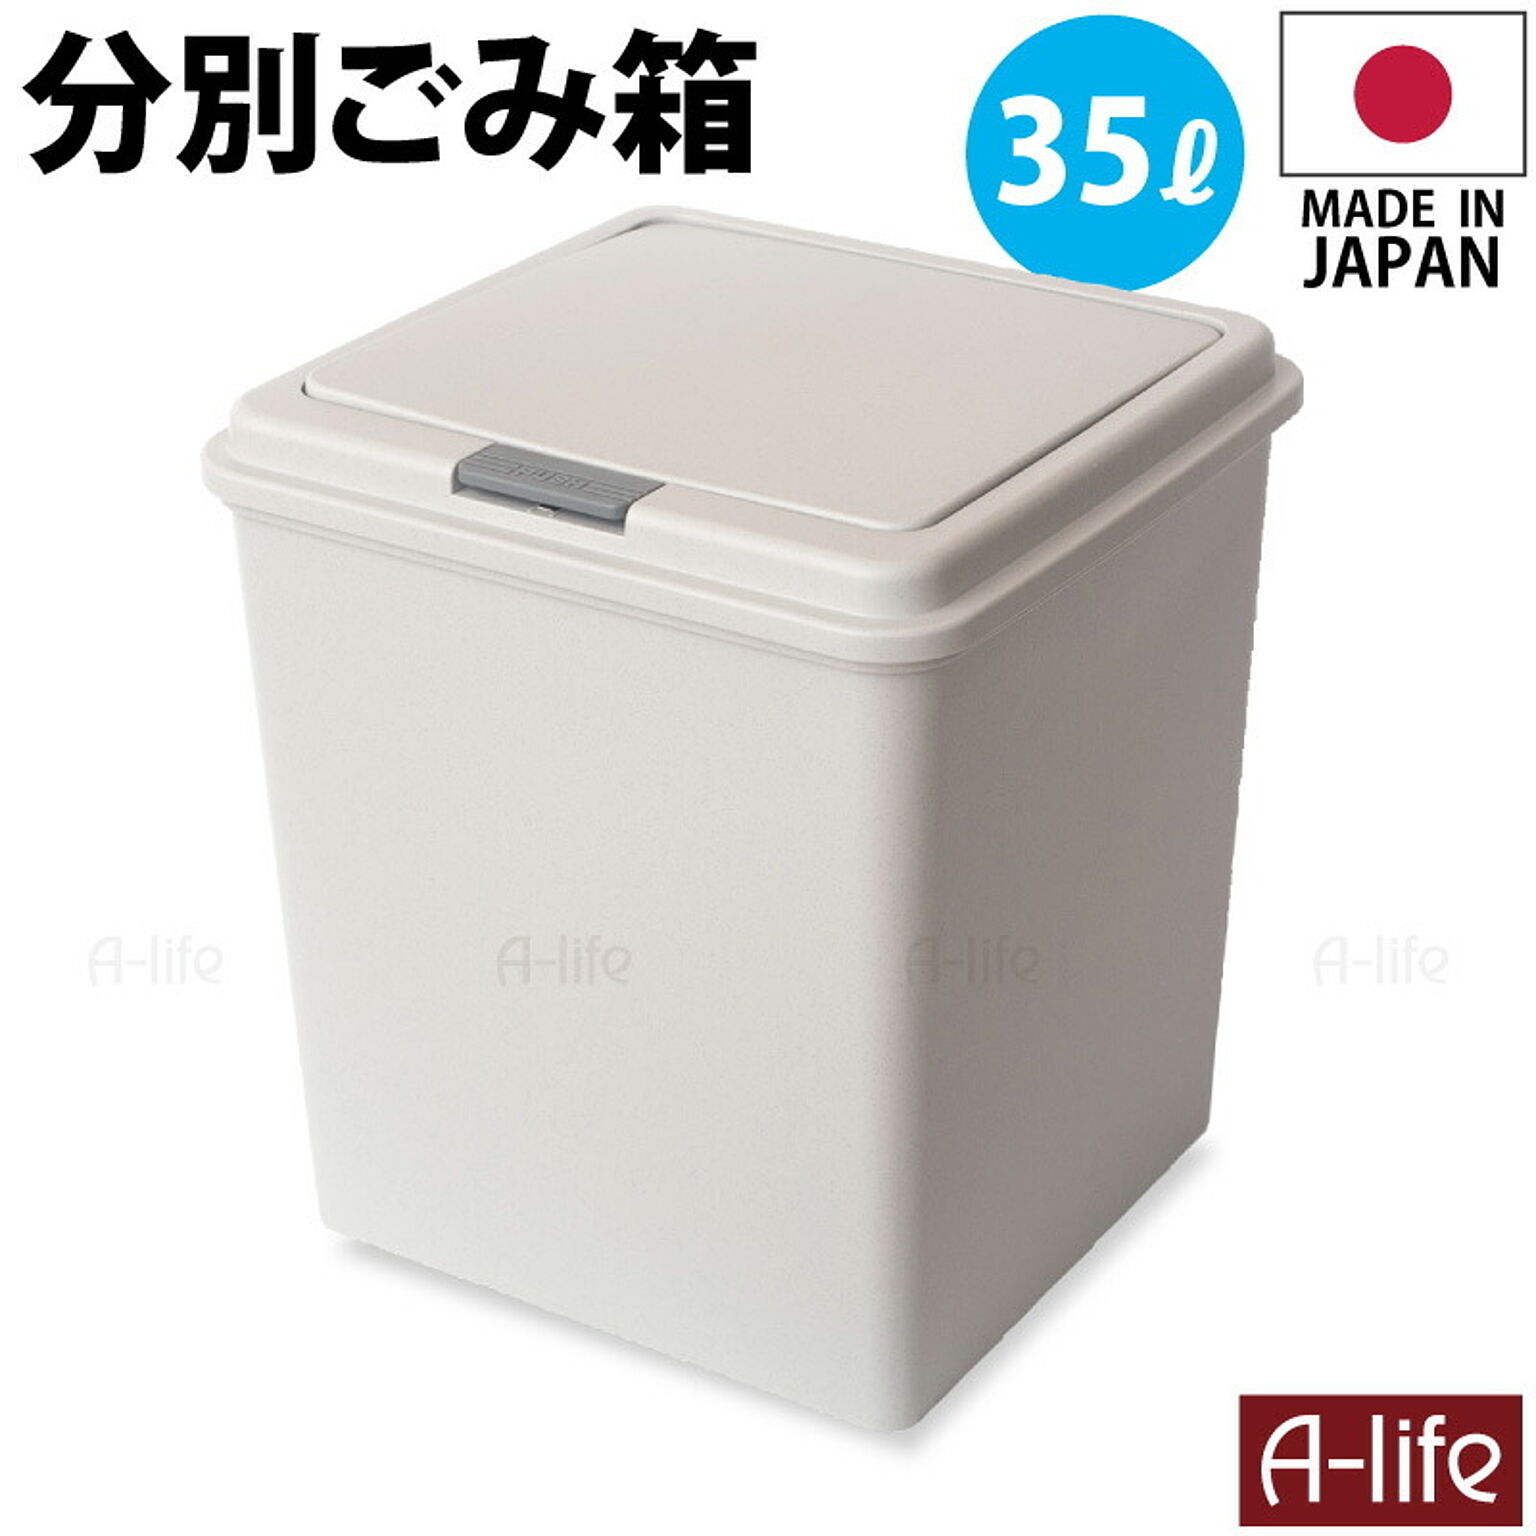 ゴミ箱 35L 1個 日本製  おしゃれ フタ付き キッチン